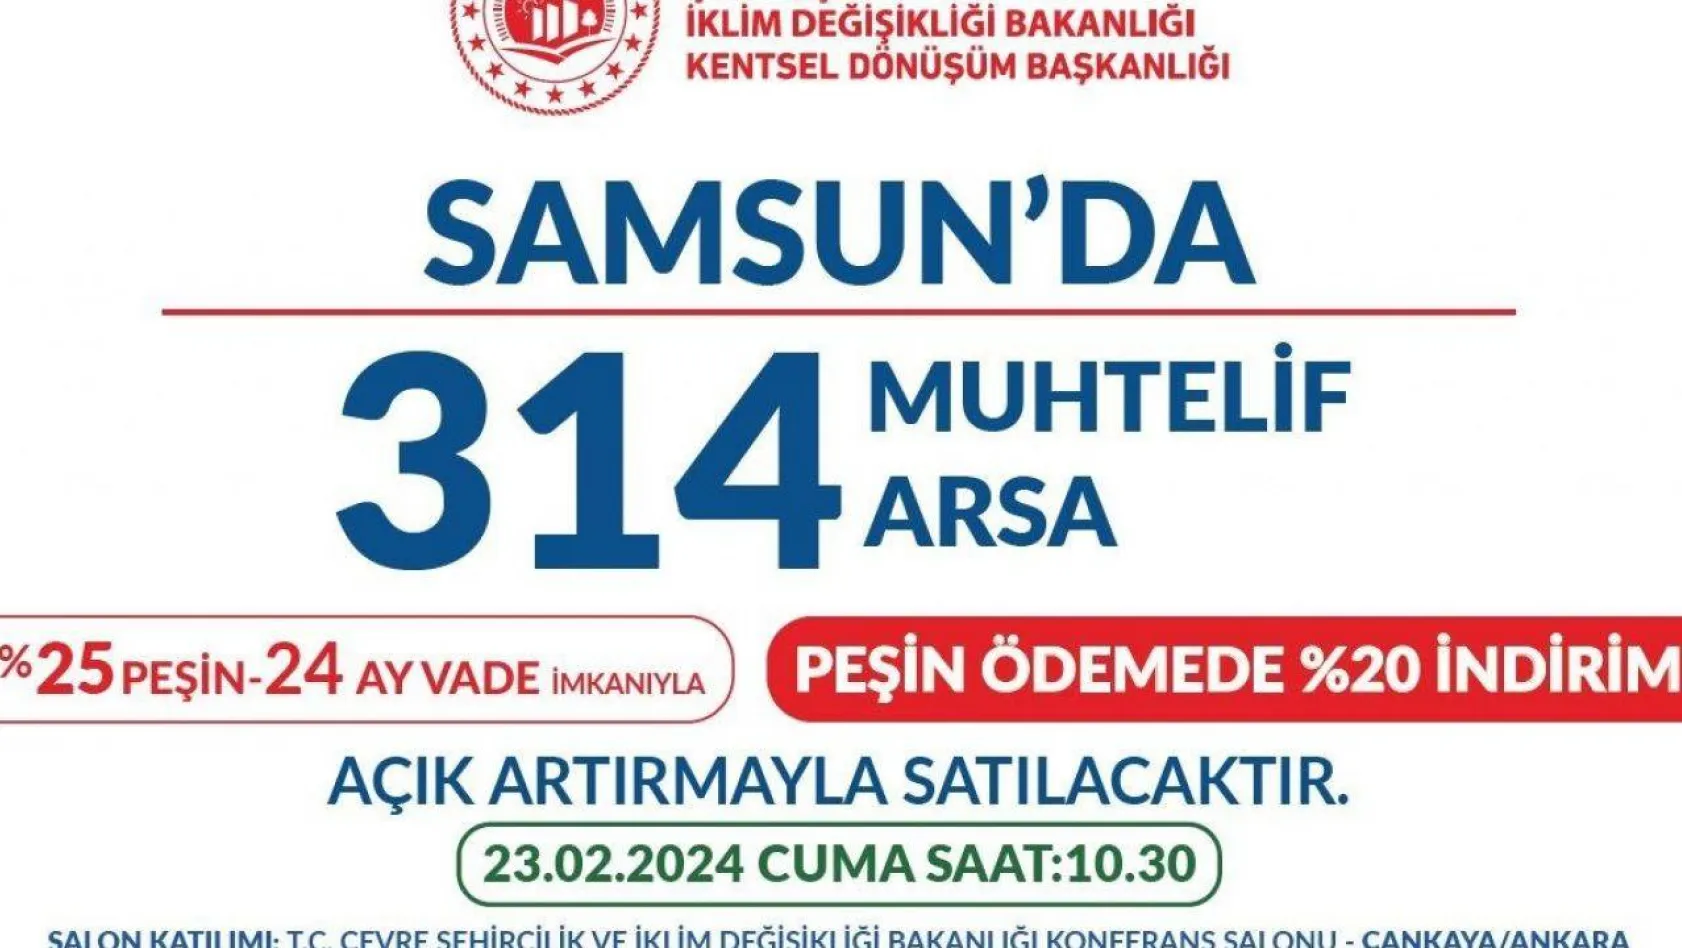 Samsun'da fırsat, 314 arsa satılacak